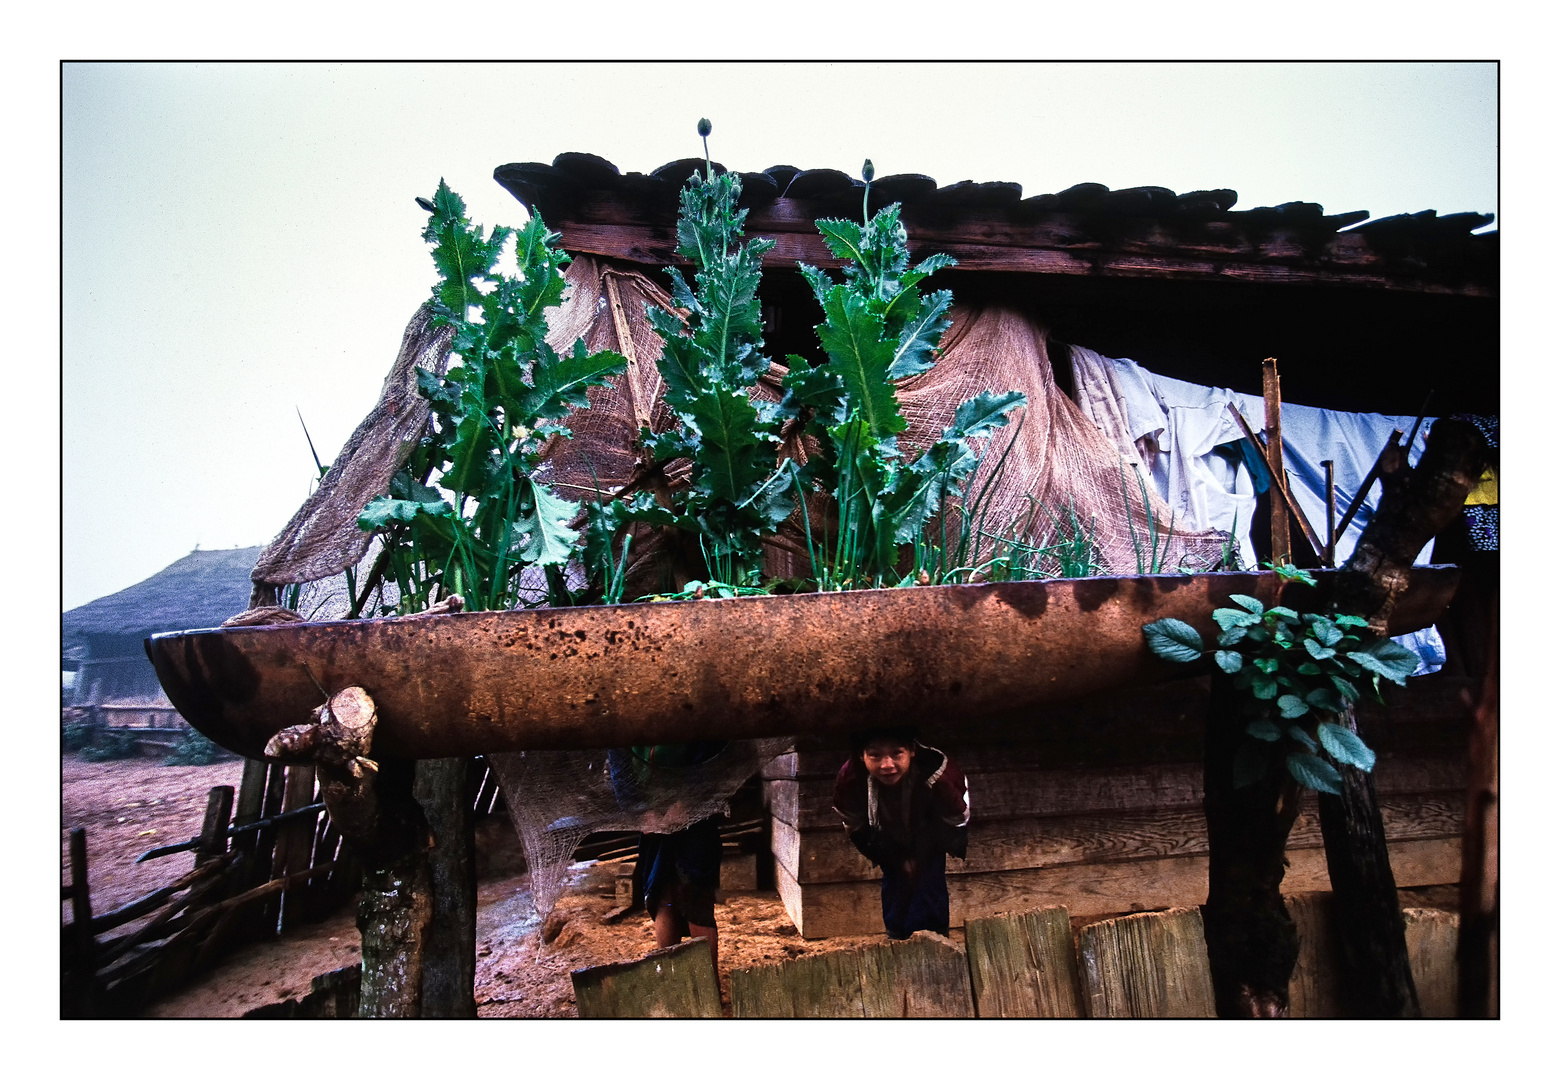 Schlafmohn im Hochbeet. Xieng Khouang, Laos